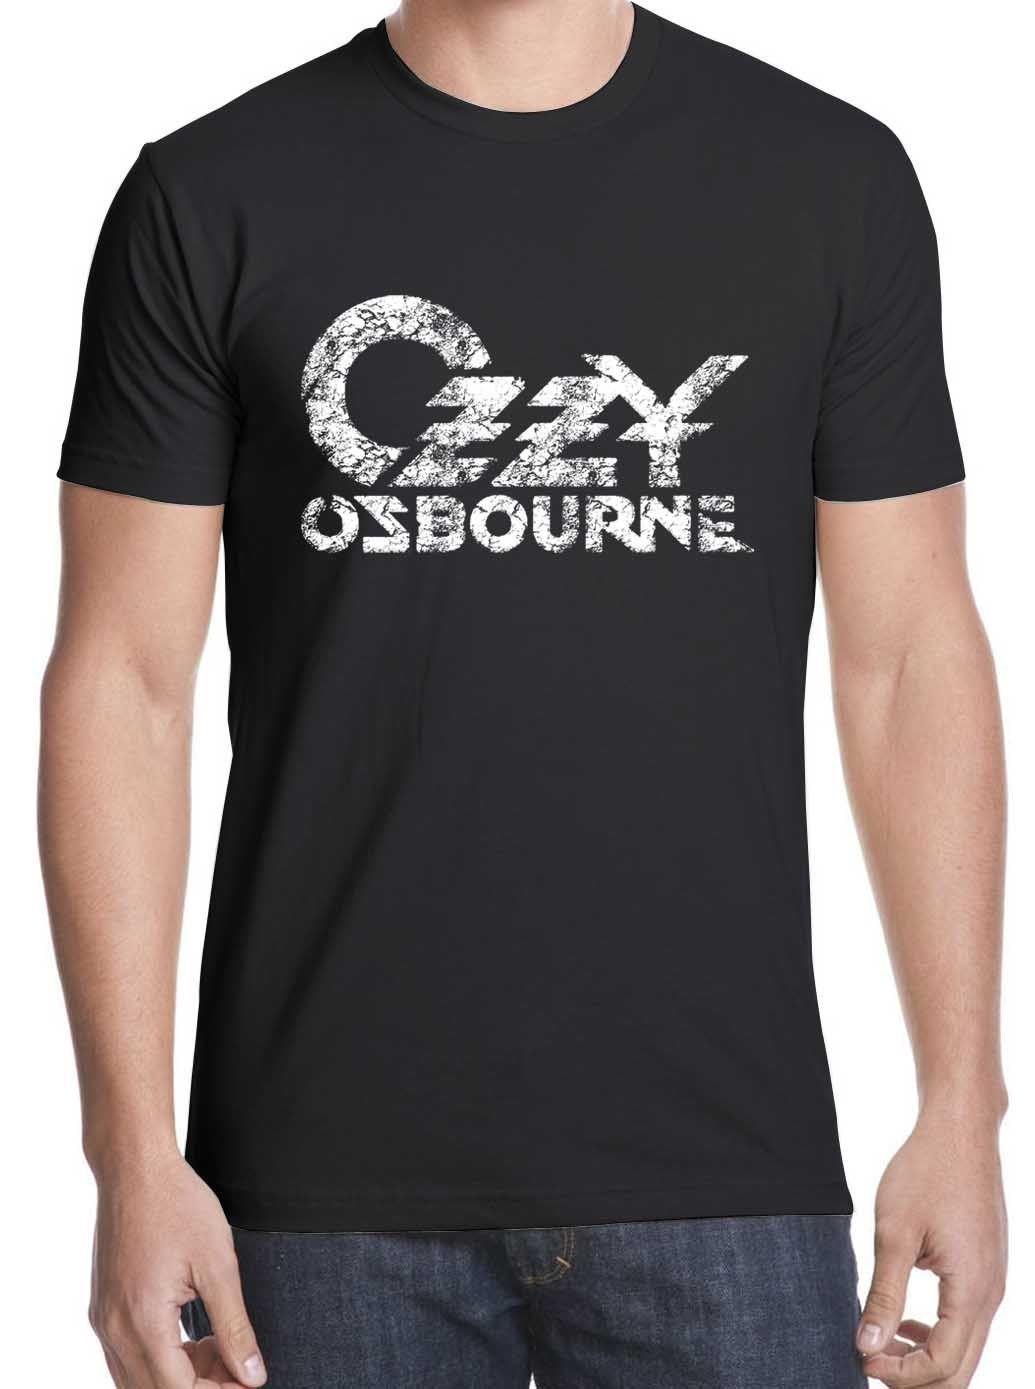 New Ozzy Logo - Hot Sale Ozzy Osbourne T Shirt New Tshirt Logo T Shirt S XXL Free